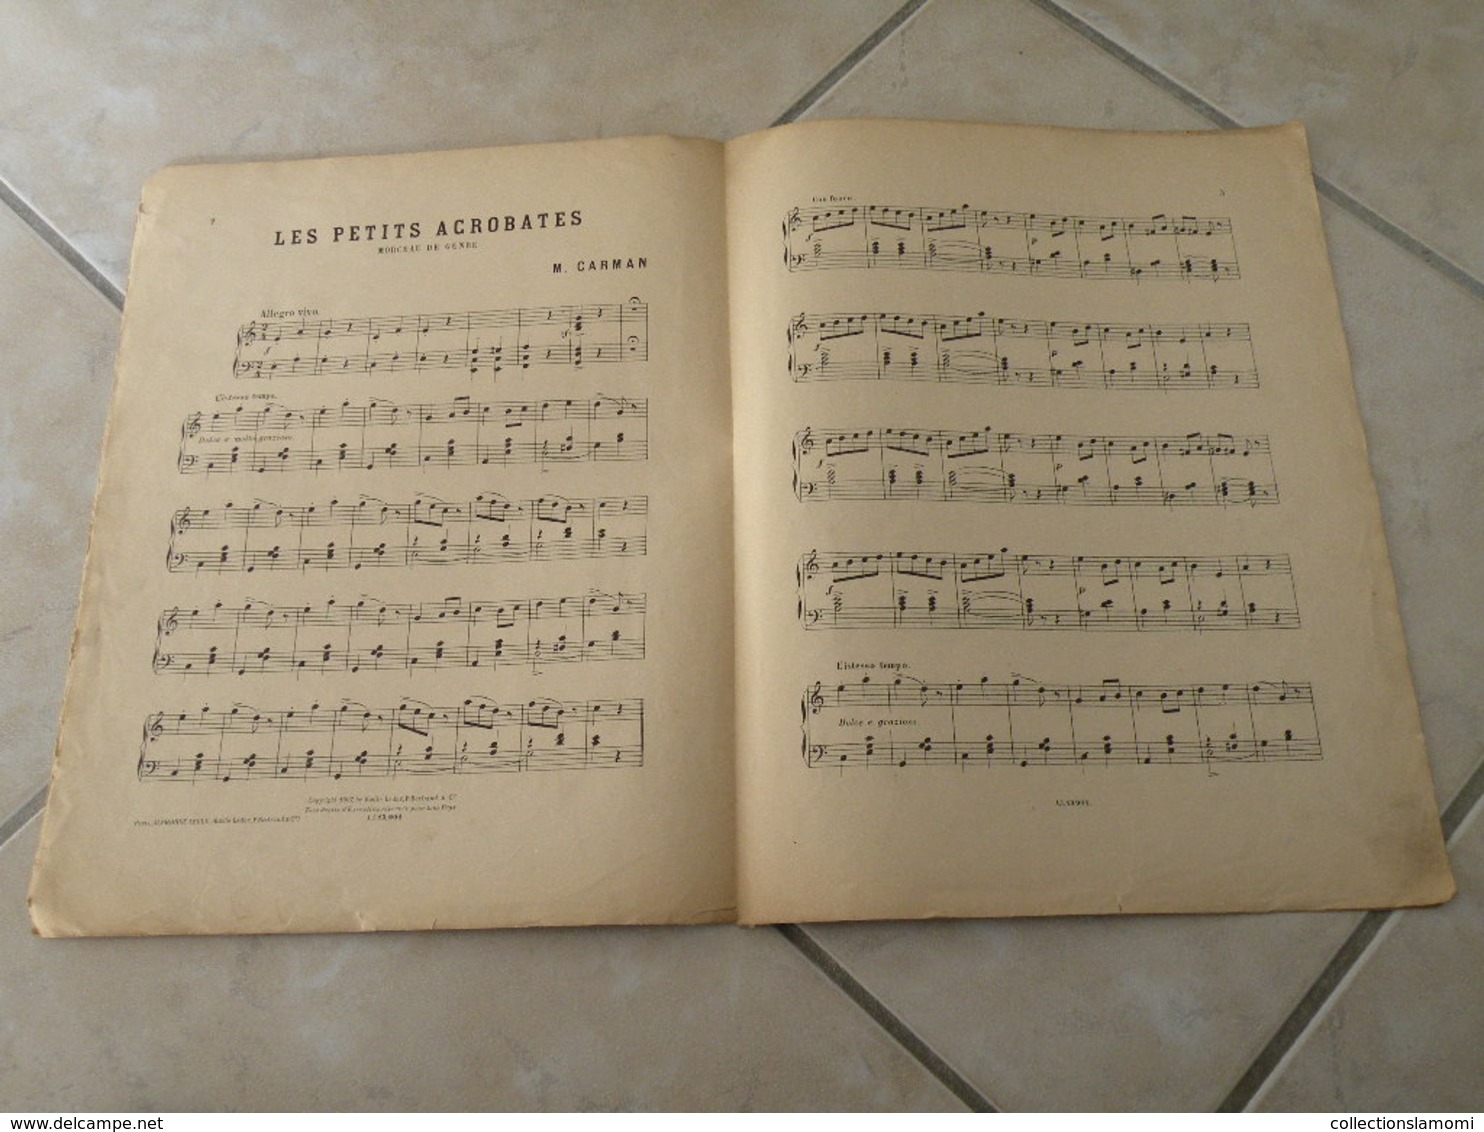 Les Petits Acrobates -(Musique Marius Carman) - Partition (Piano)1907 - Tasteninstrumente